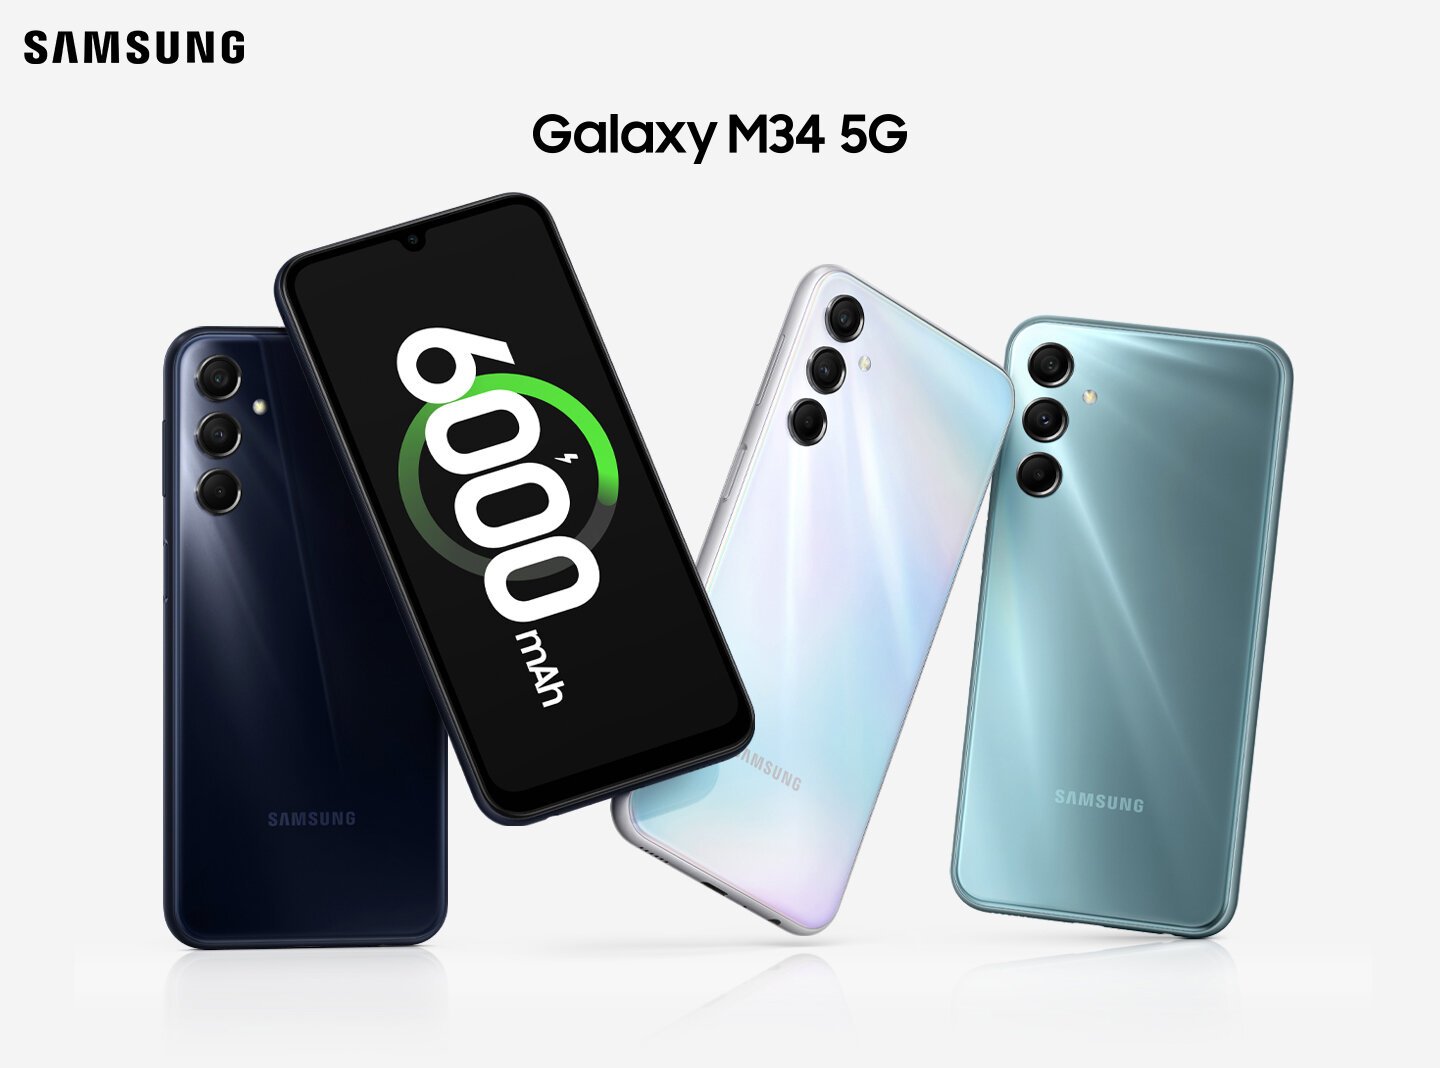 Cztery Galaxy M34 5G pokazane są razem. Po lewej stronie widać tylną obudowę Galaxy M34 5G w kolorze ciemnoniebieskim. Obok widoczny jest ekran z przodu z ikoną ładowania baterii i liczbą „6000 mAh”. Następnie pokazane są tylne obudowy urządzeń w kolorach srebrnym i niebieskim.